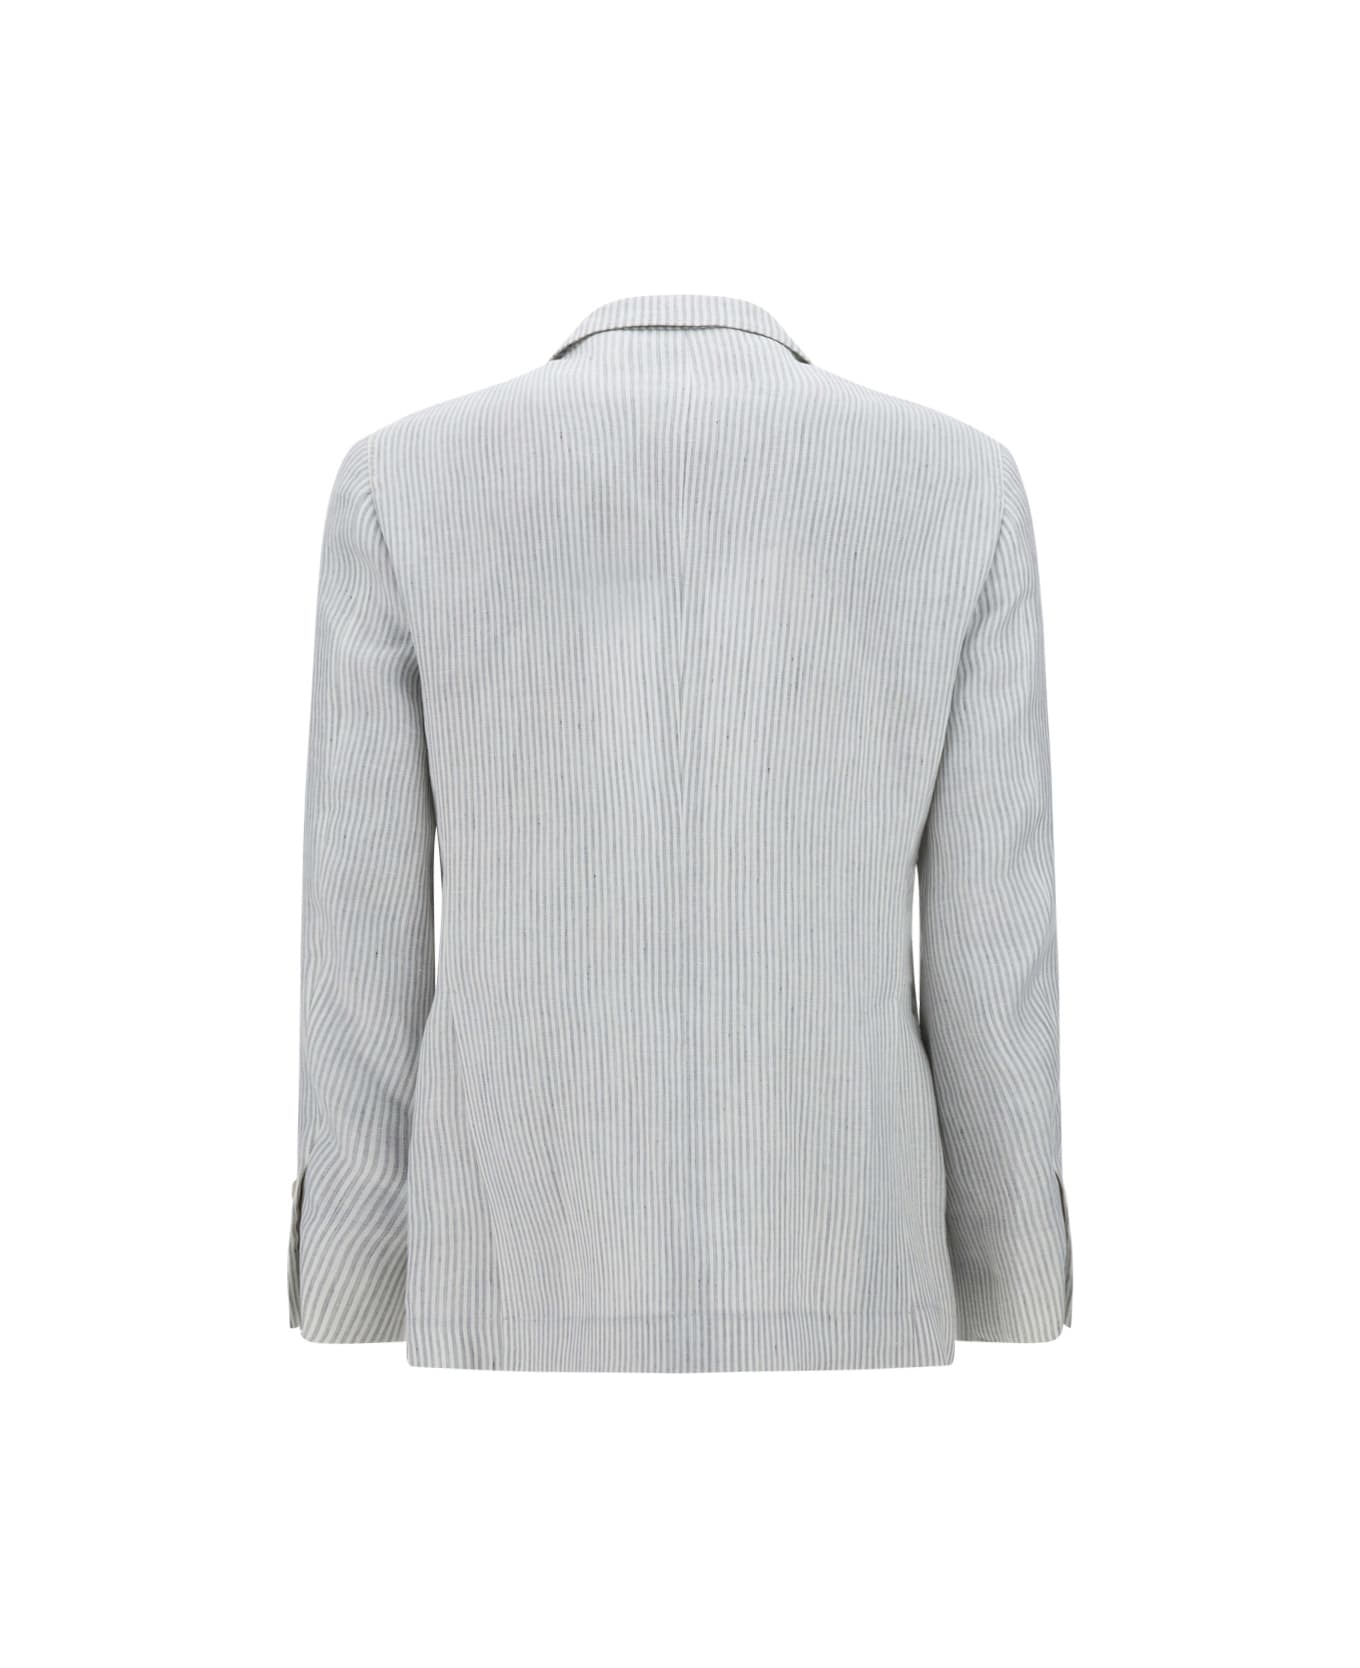 Brunello Cucinelli Blazer Jacket - White